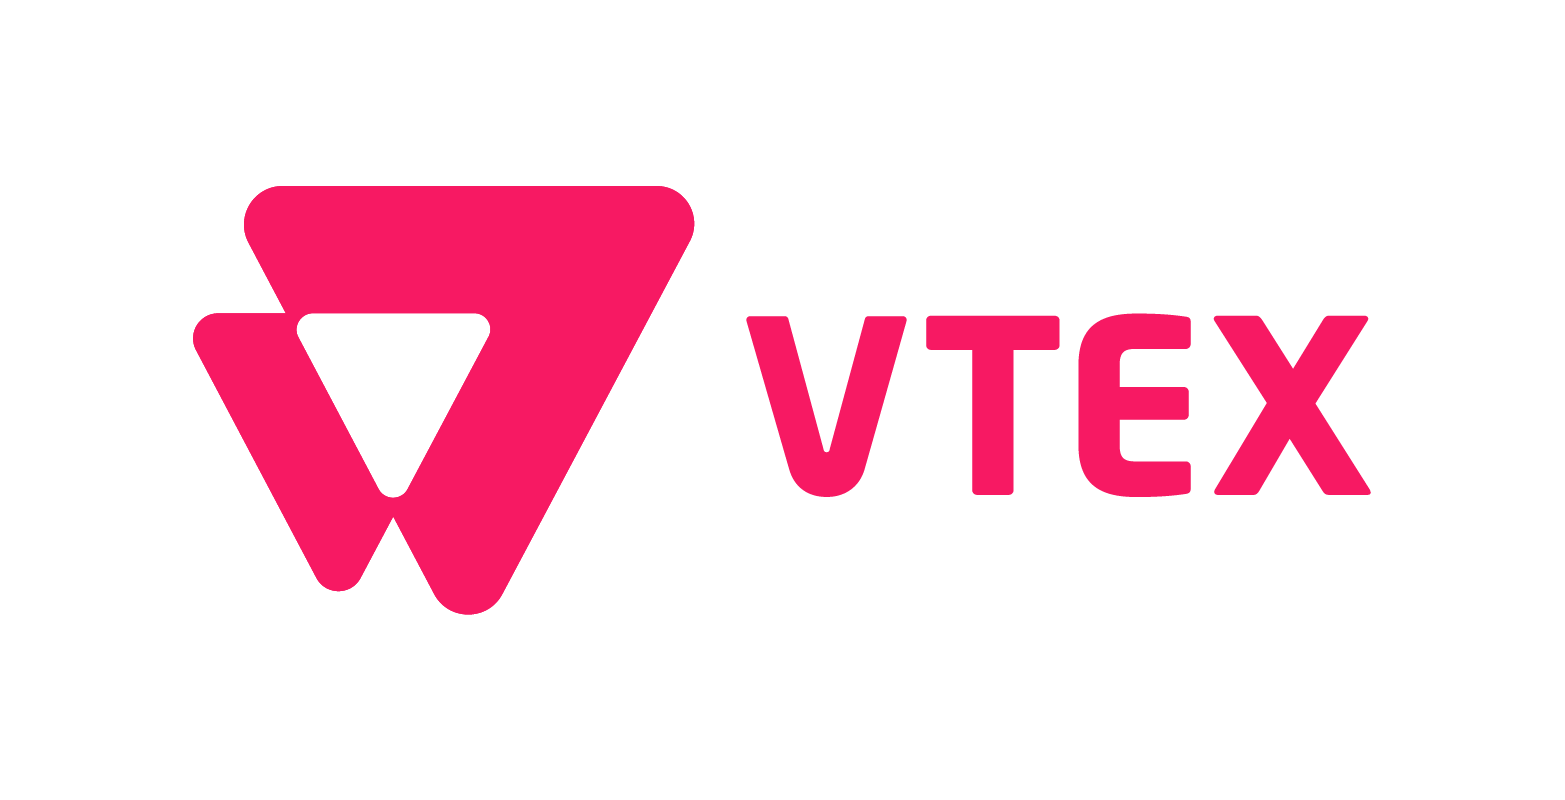 Logotipo da empresa VTEX. Trata-se do nome “VTEX” em rosa. Do lado esquerdo, há um triangulo rosa estilizado.